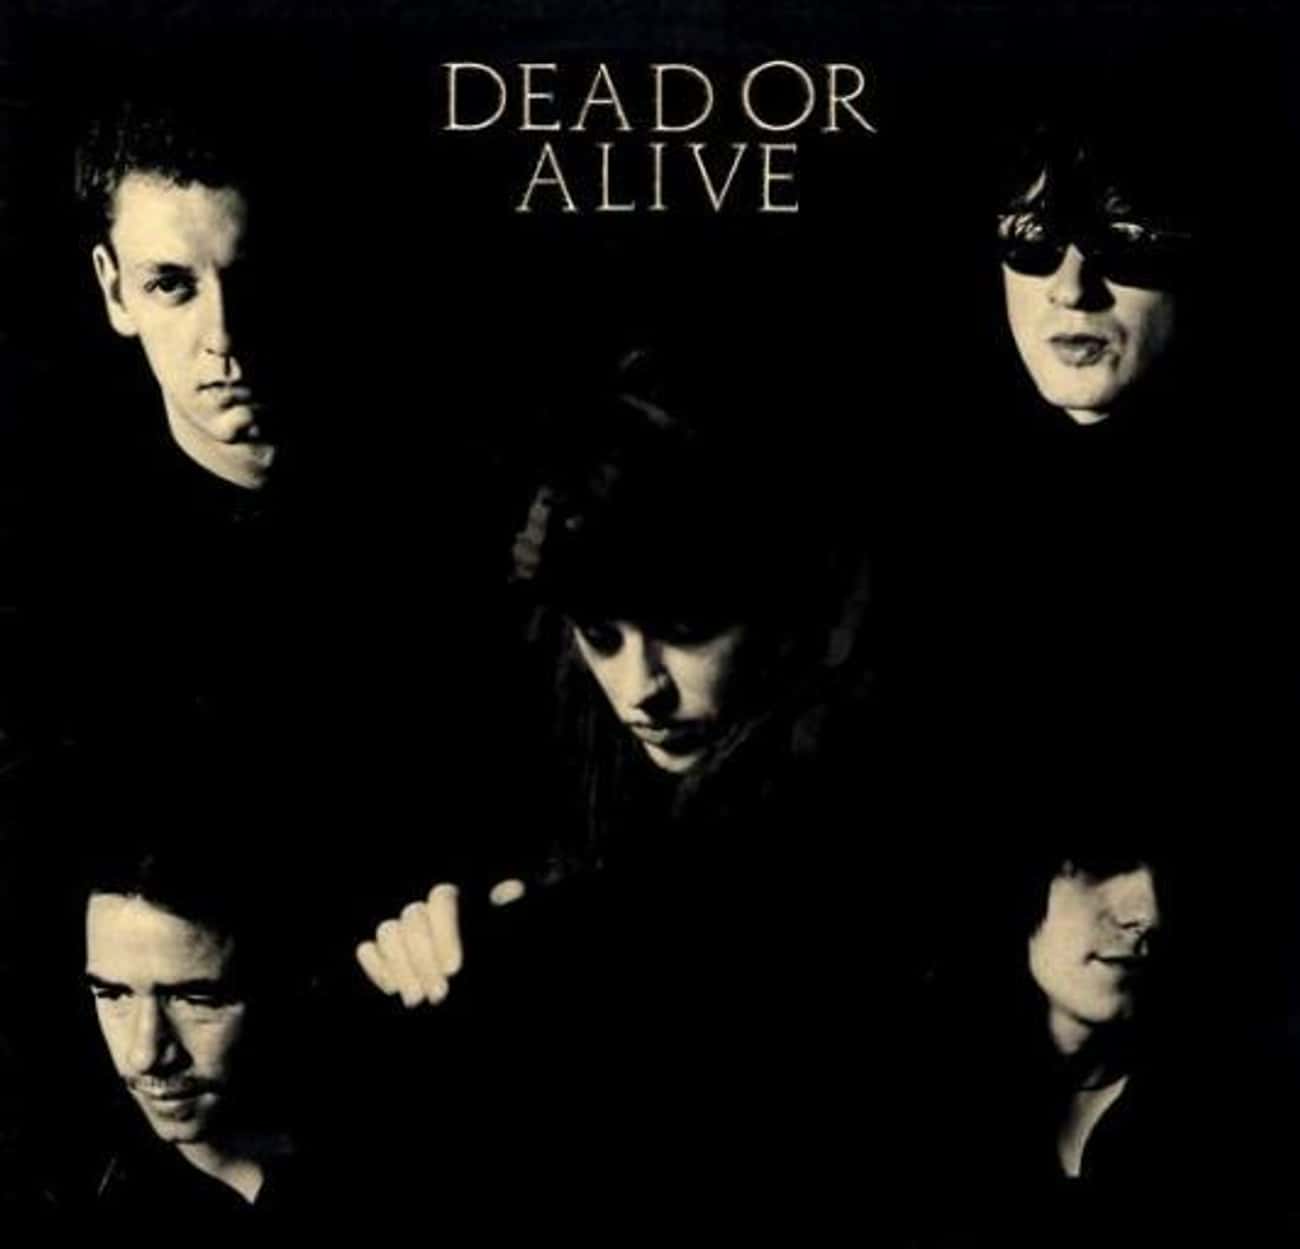 Dead or alive группа